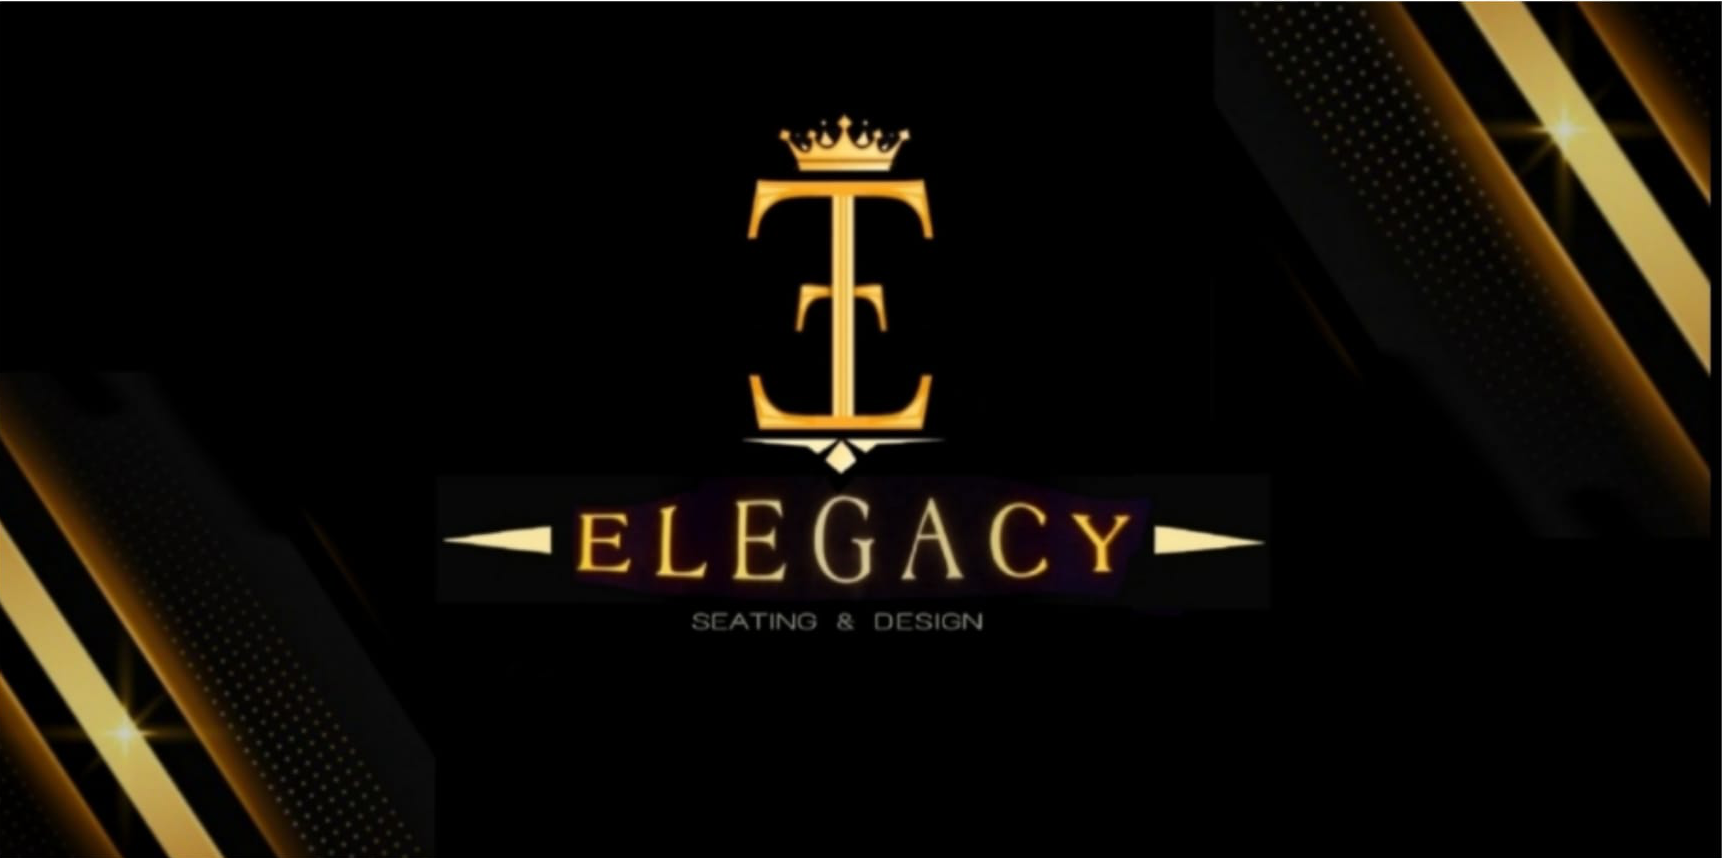 Elegacy LLC